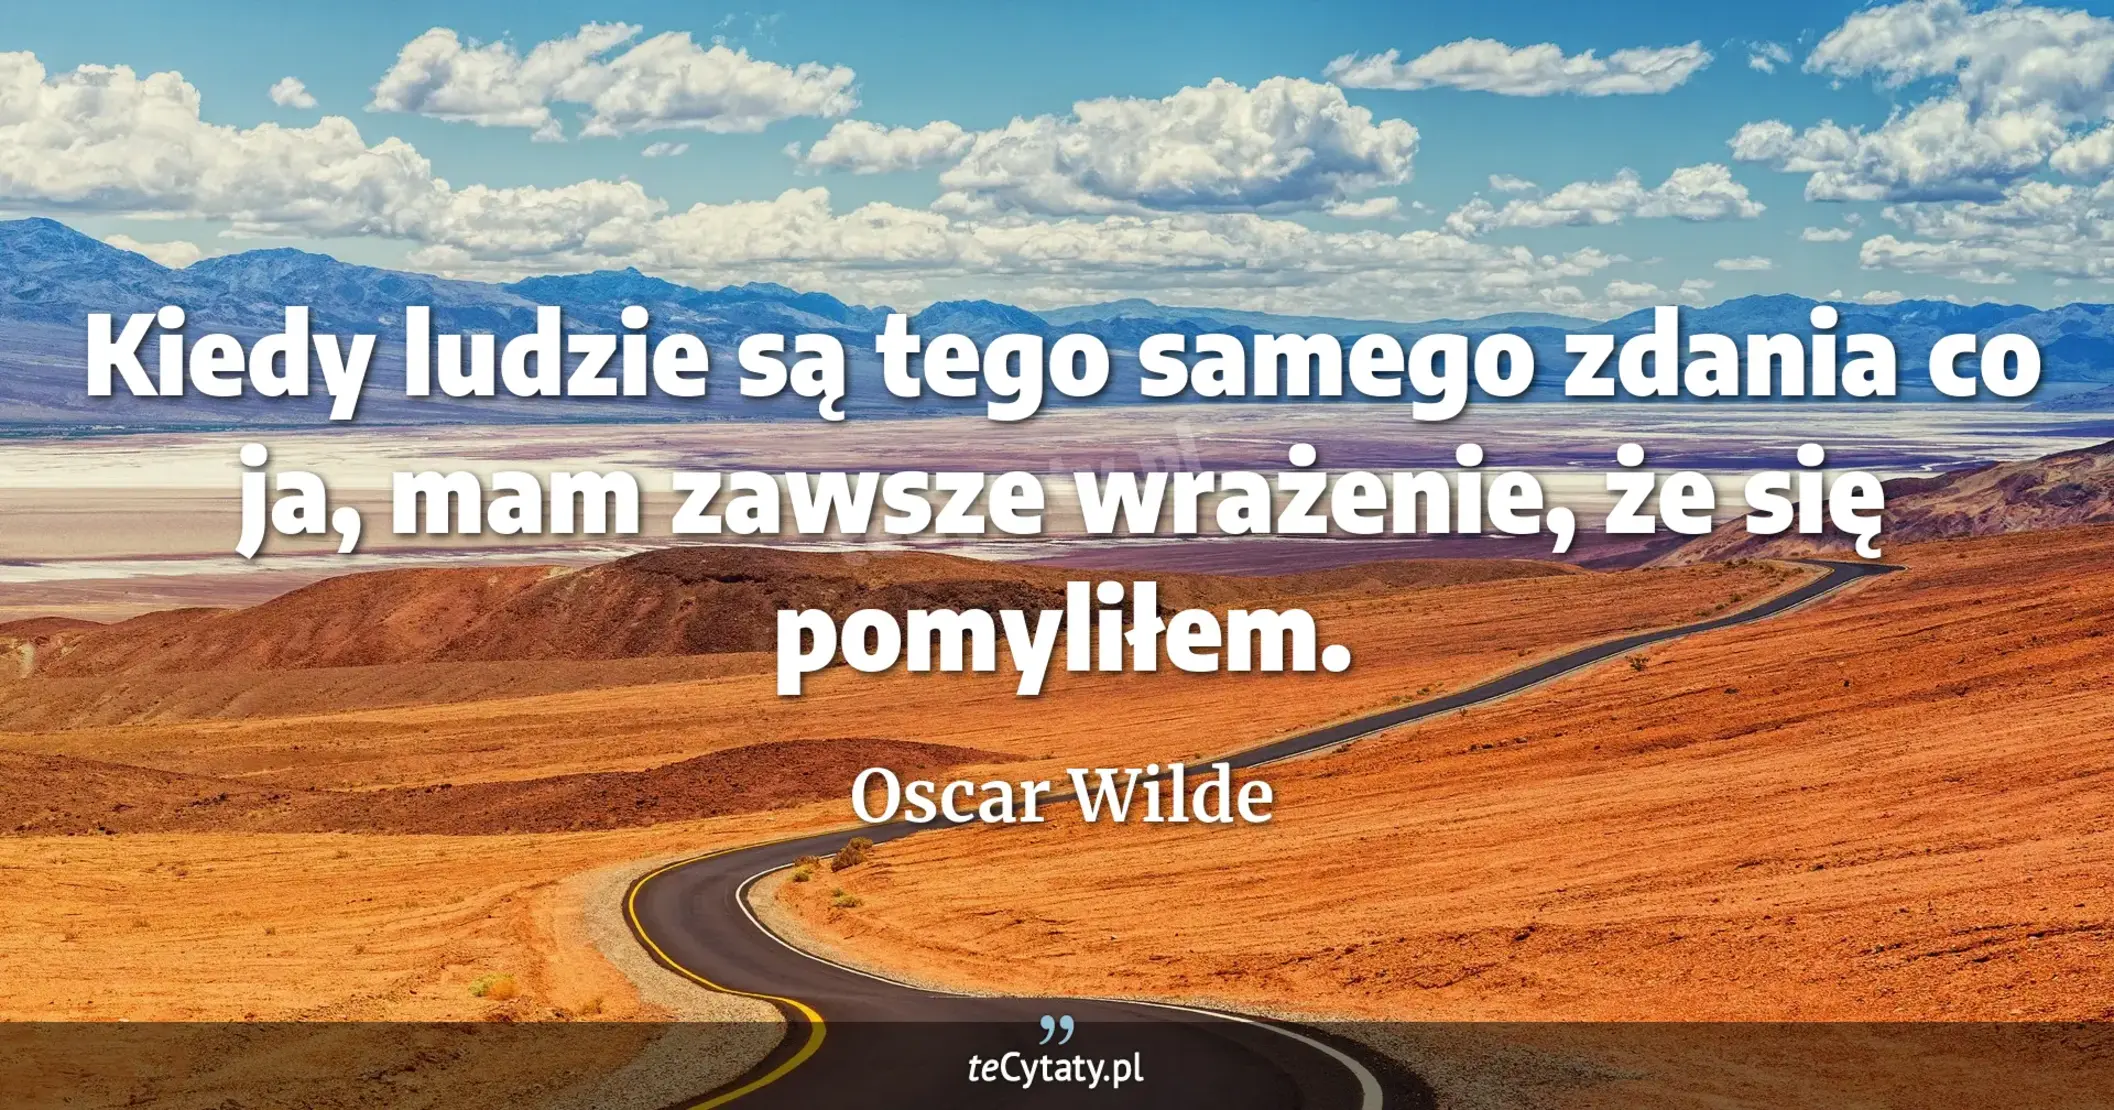 Kiedy ludzie są tego samego zdania co ja, mam zawsze wrażenie, że się pomyliłem. - Oscar Wilde